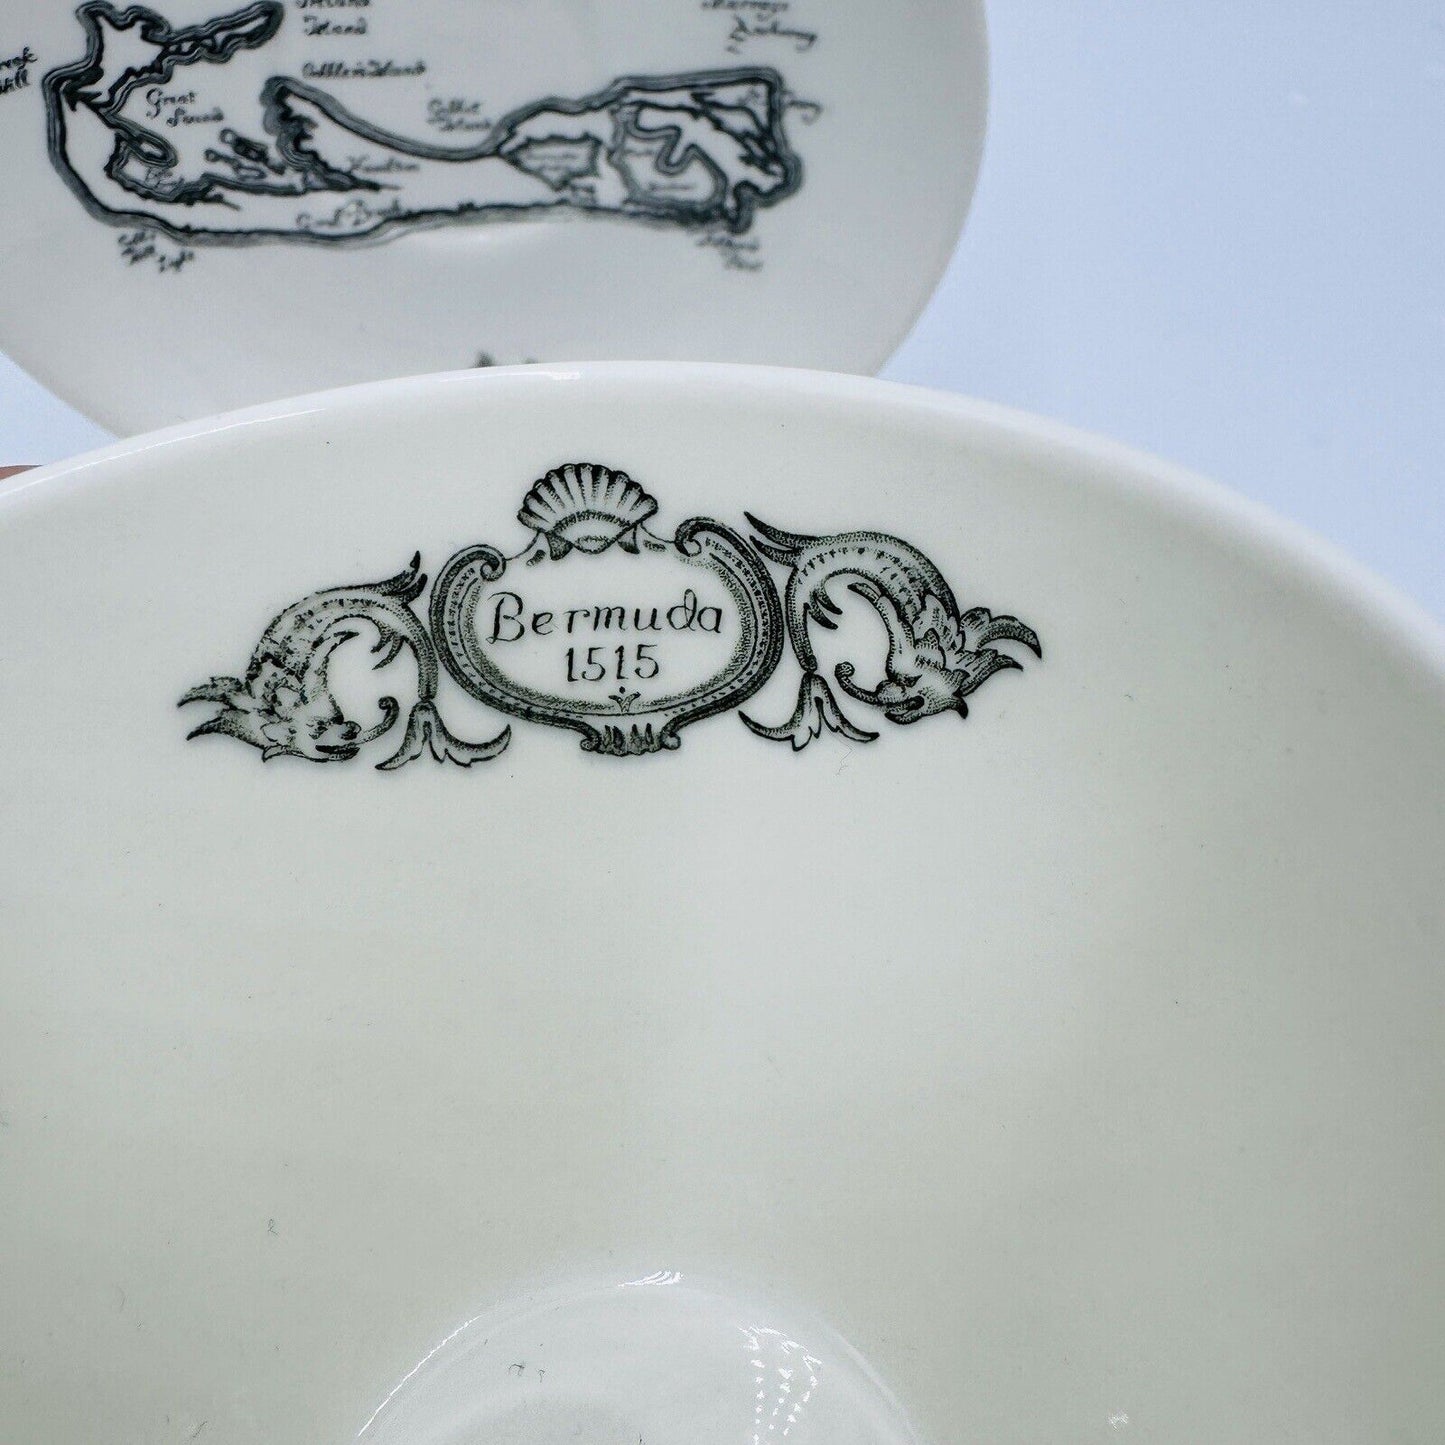 Vintage Wedgwood Bermuda Teacup & Saucer Made for A.S. Cooper & Sons Porcelain